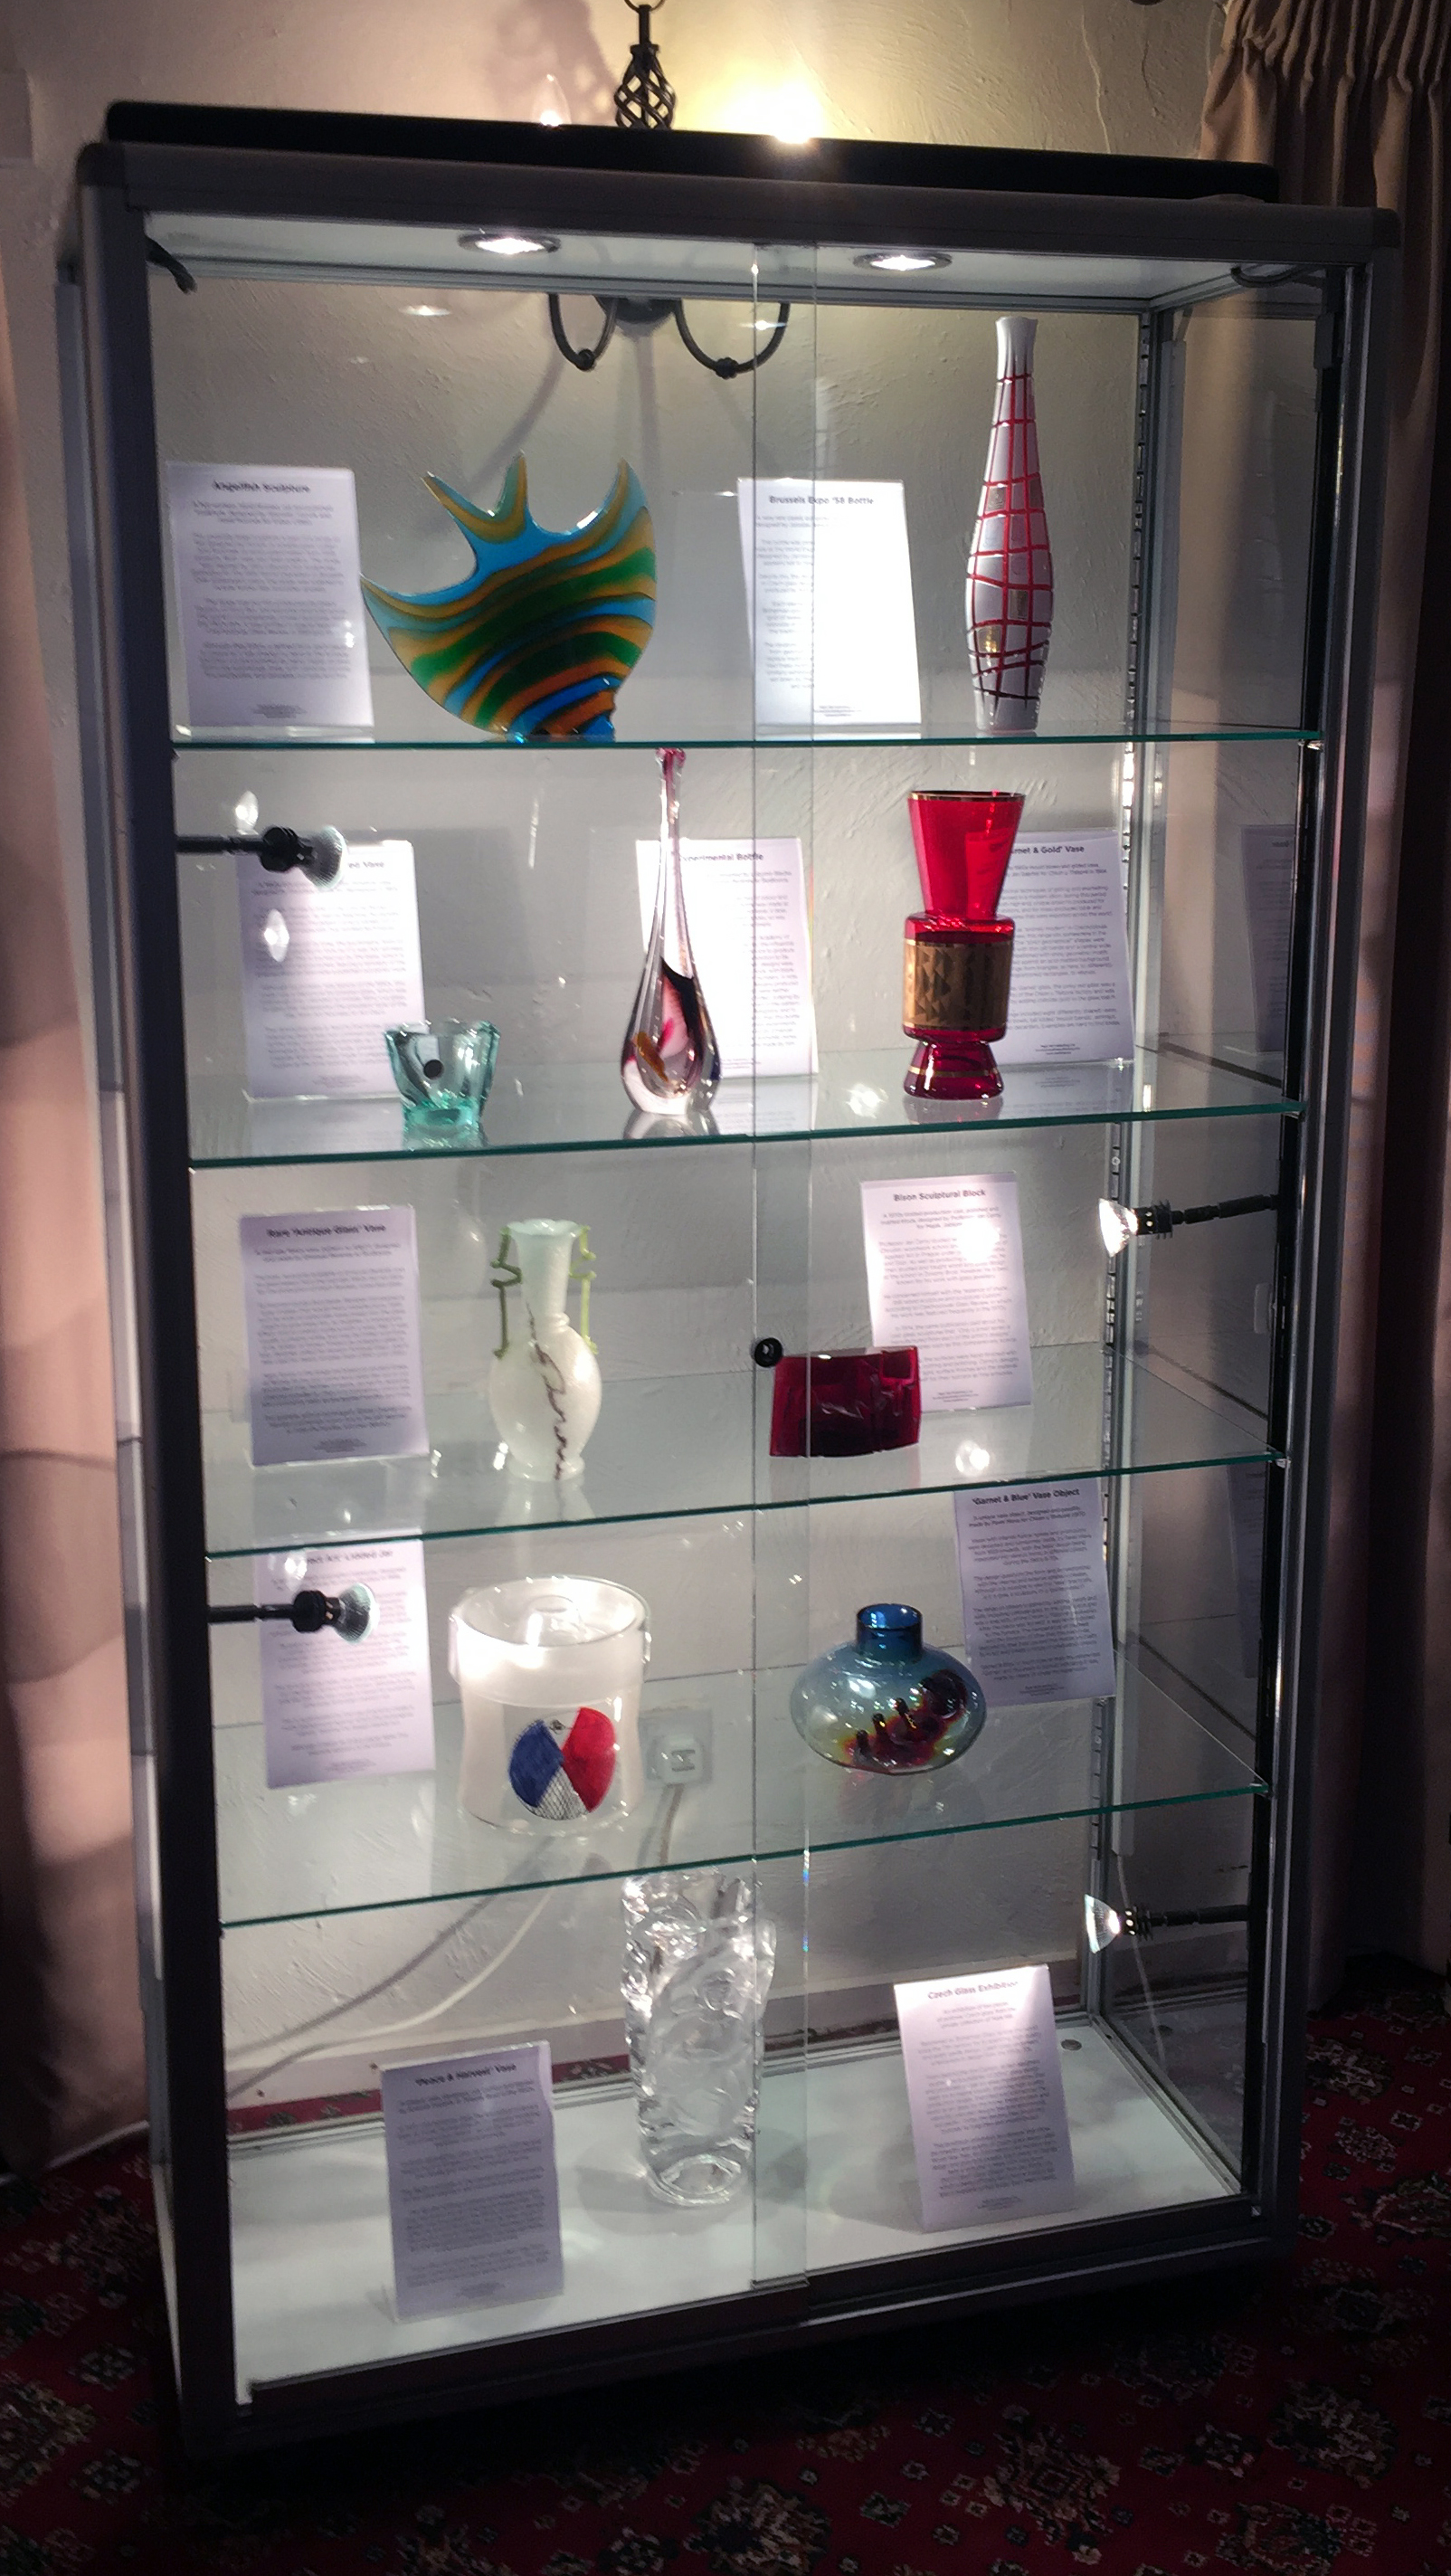 Mark Hill's exhibition of postwar Czech Glass at The Cambridge Glass Fair